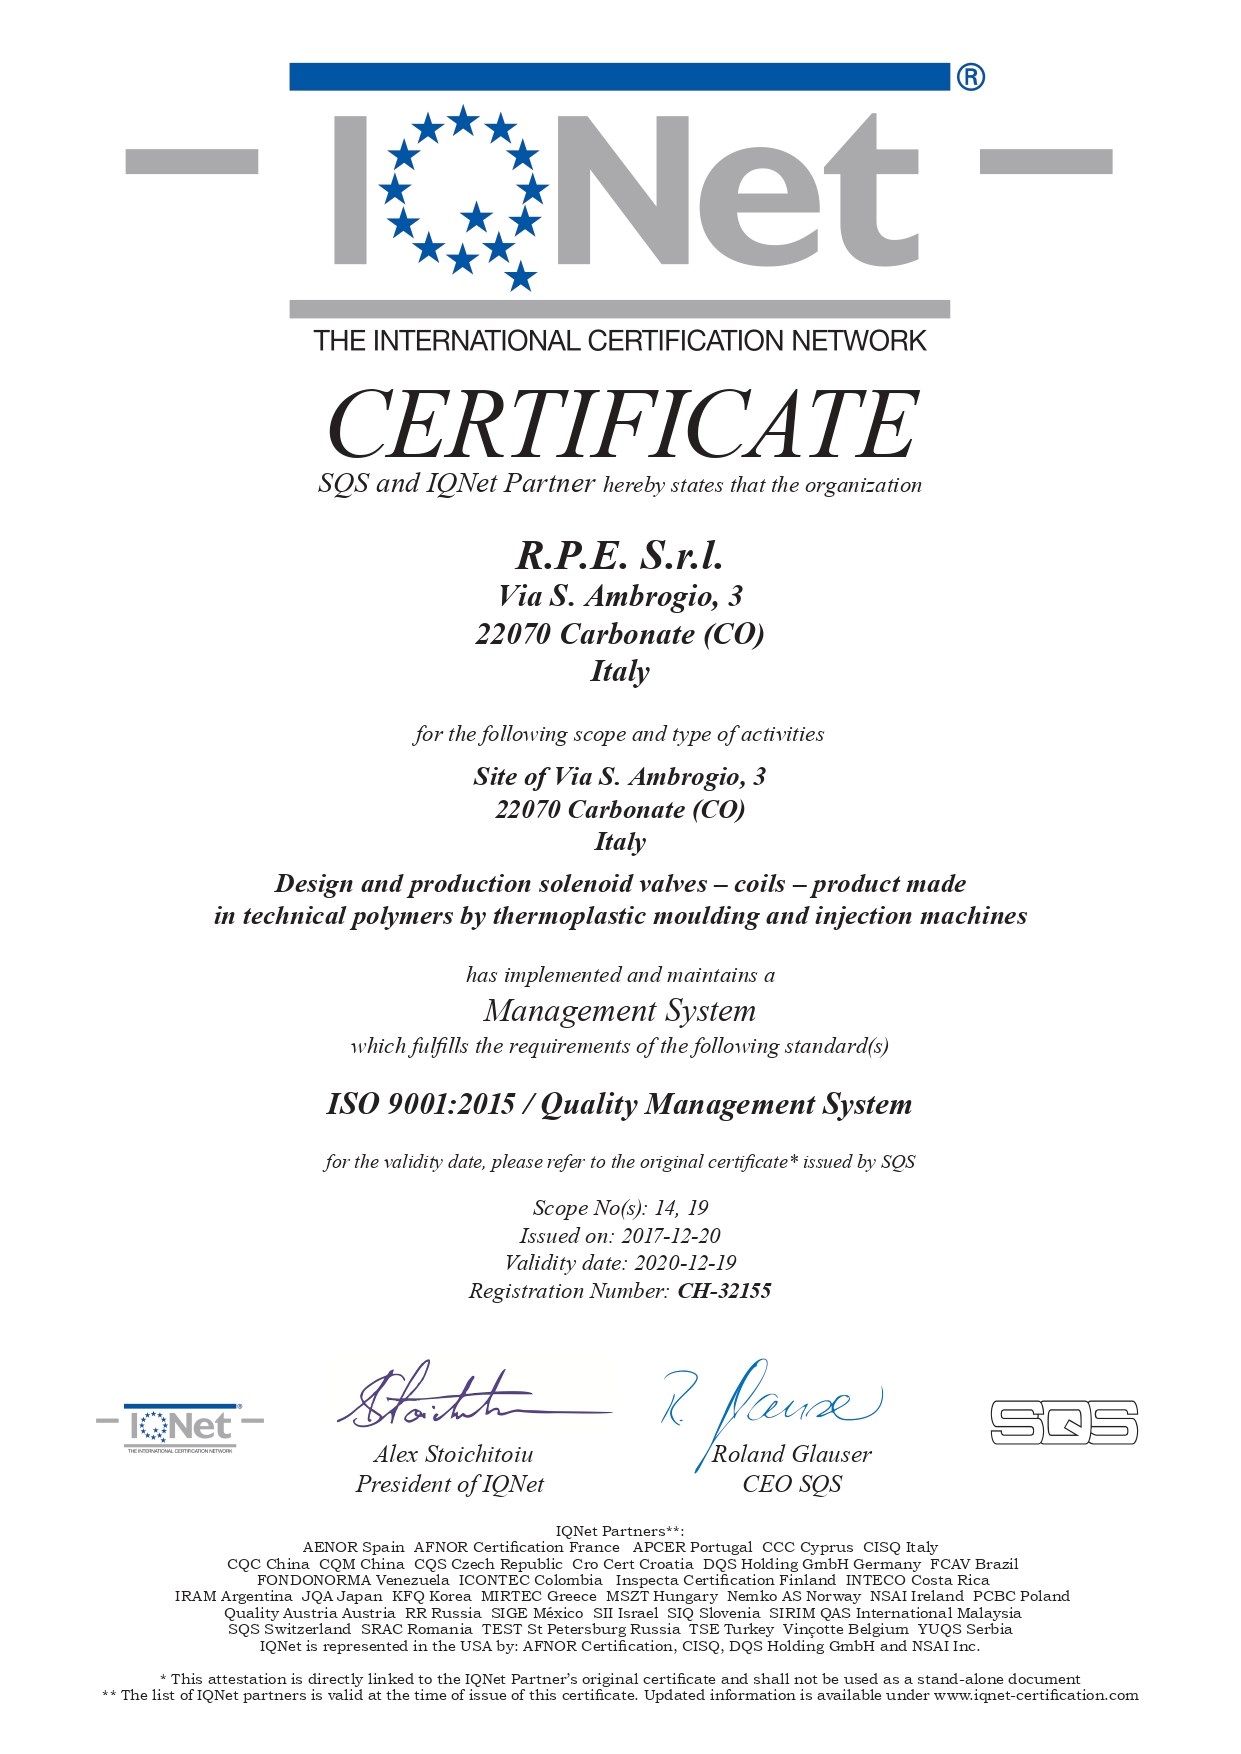 RPE Srl, ISO 9001:2015